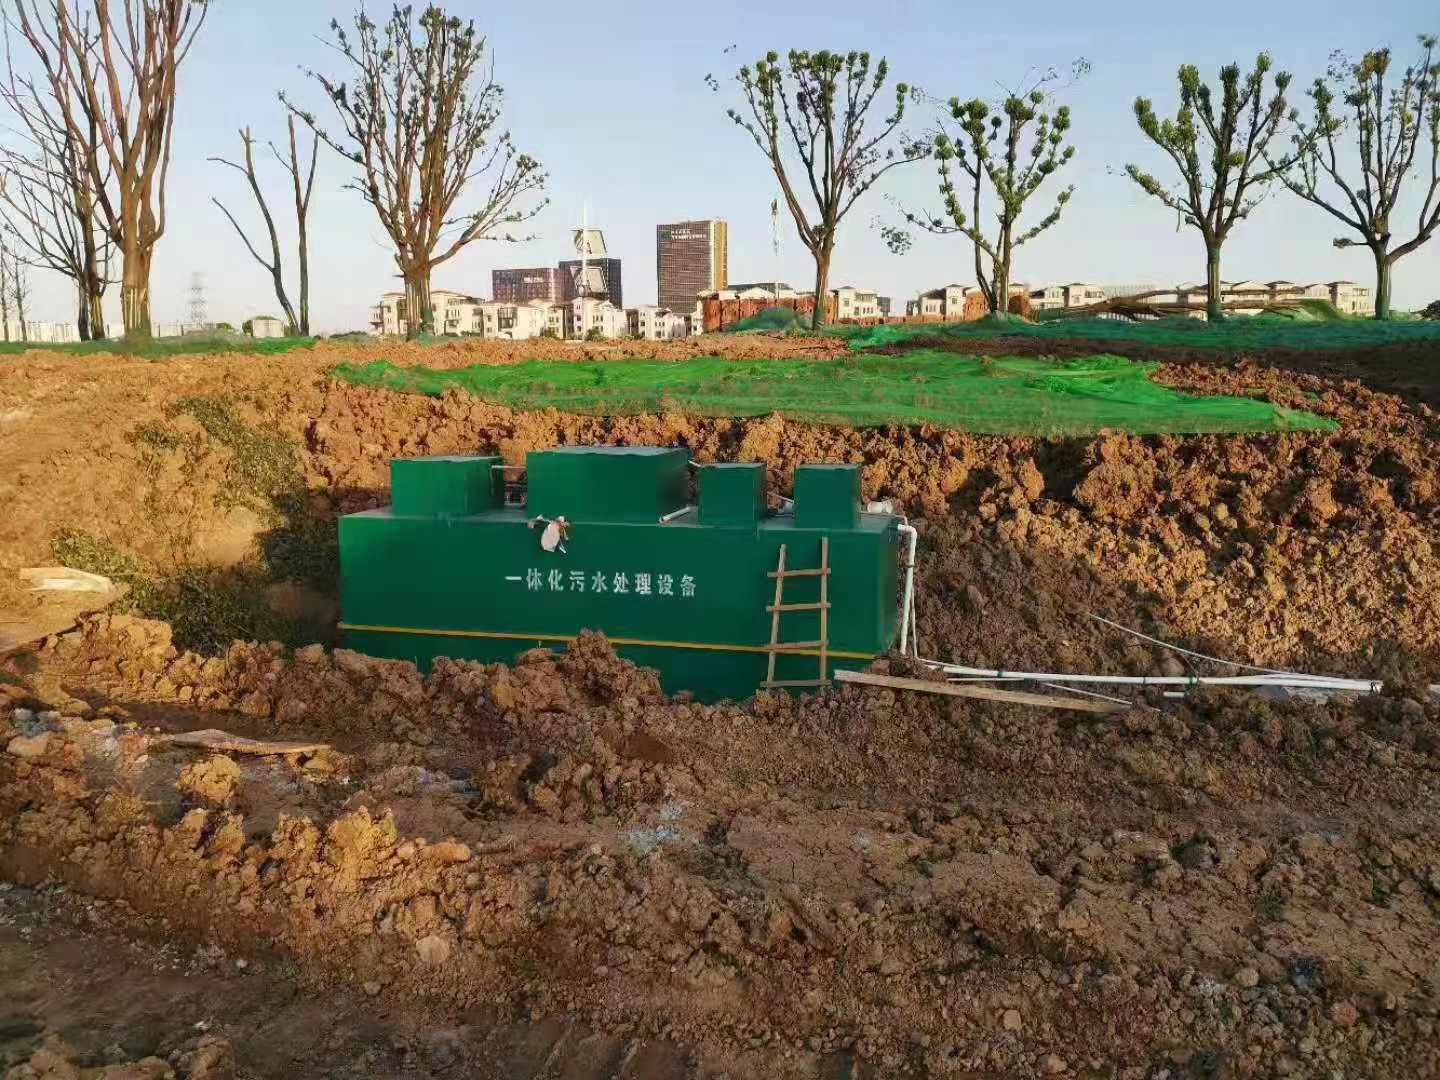 巴彦淖尔 农村生活用水地埋式污水处理设备 环保设备 改造农村污水农村污水处理设备